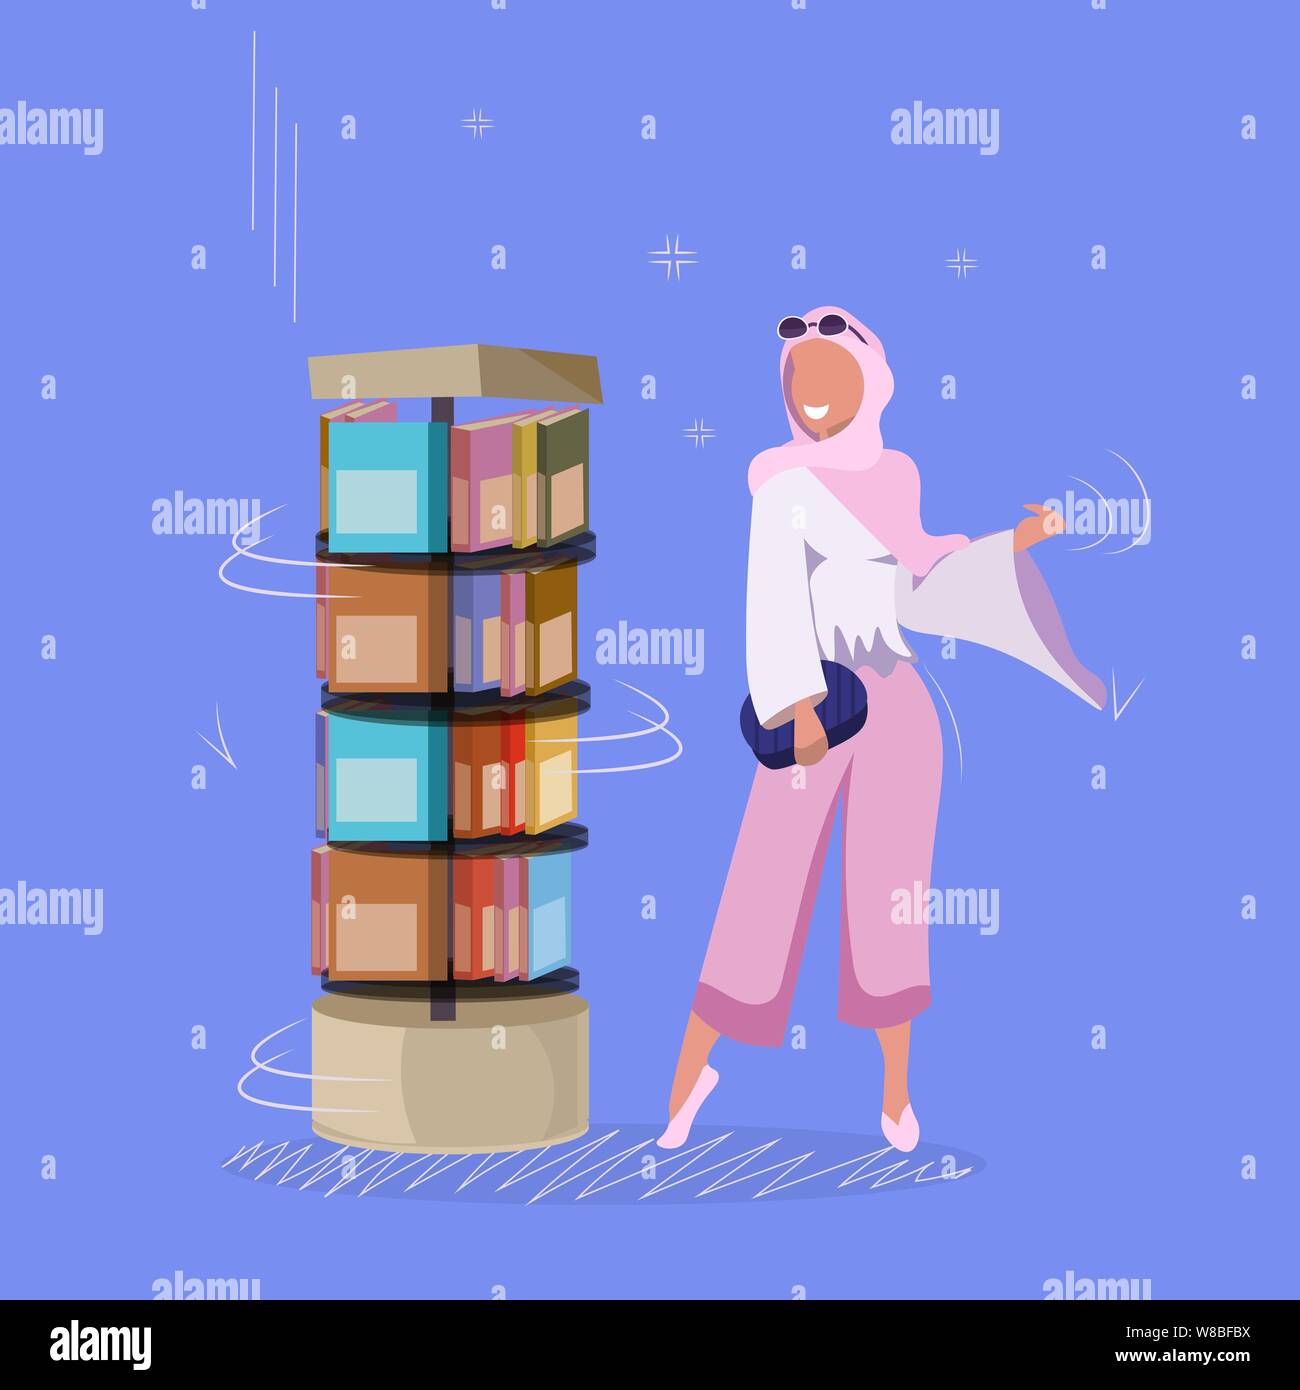 arab woman standing near bookshelf arabic girl choosing books for reading library or bookstore visitor flat full length vector illustration Stock Vector